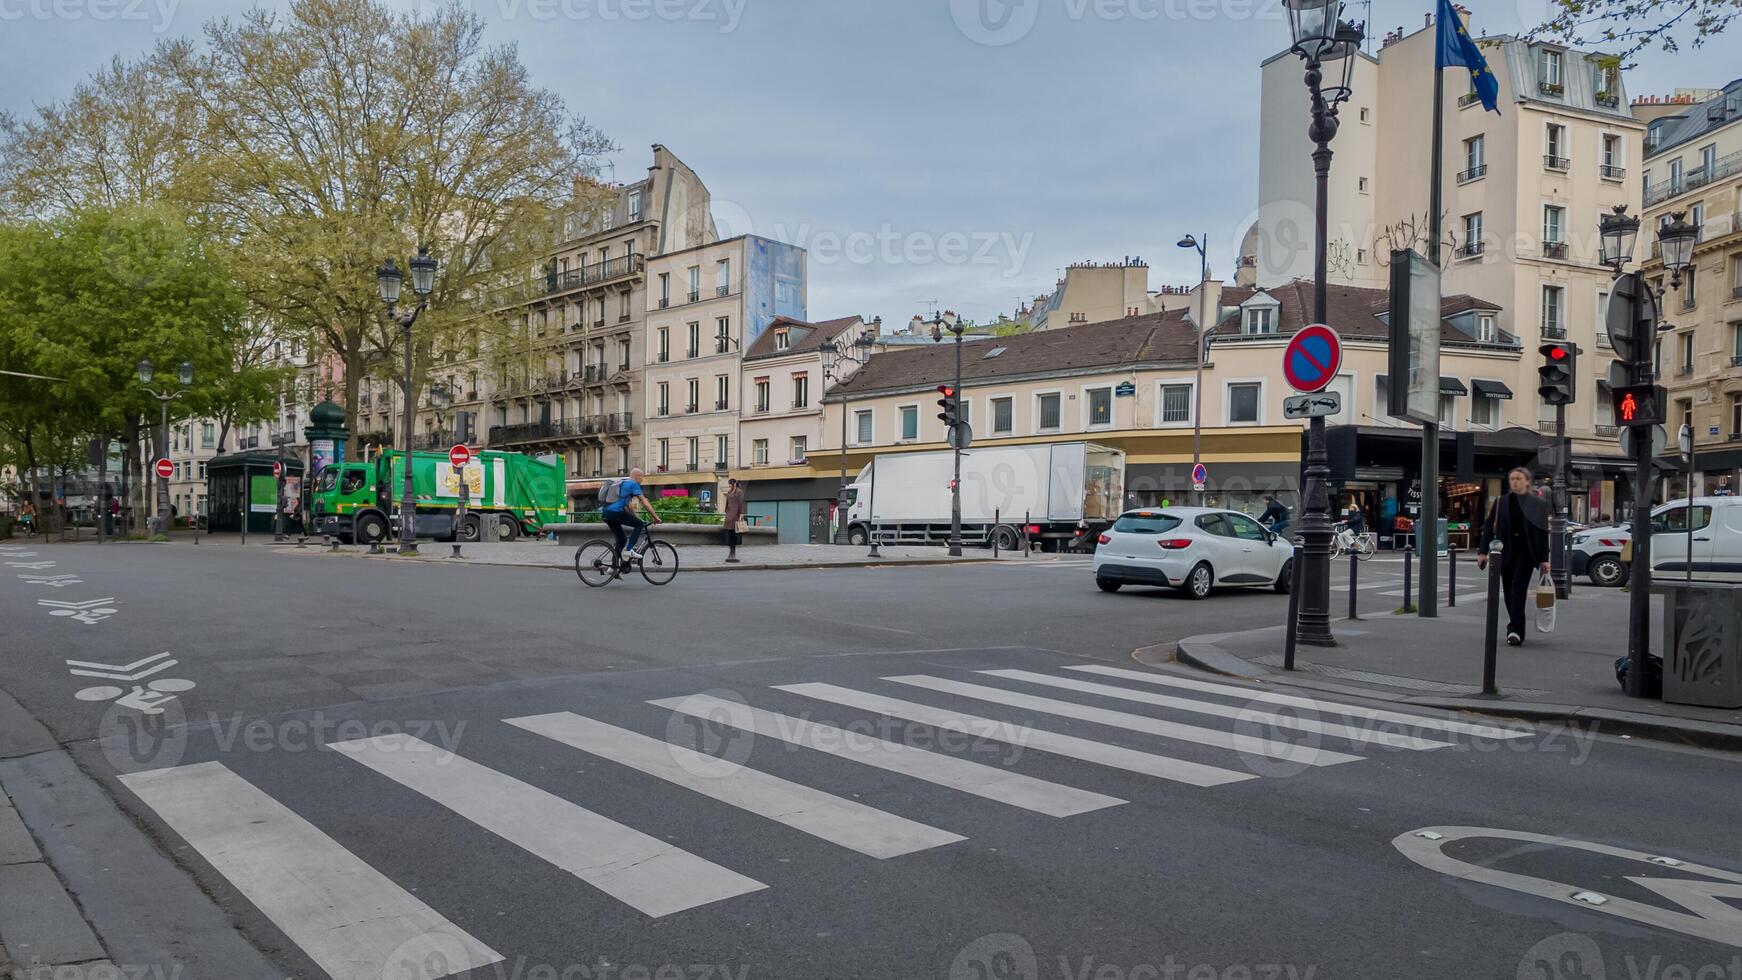 ruhig Stadt Straße Szene im Paris mit ein Radfahrer Kreuzung und Fahrzeuge, Erfassen täglich städtisch Leben und nachhaltig Transport, möglicherweise nützlich zum Reise oder Umwelt Themen foto